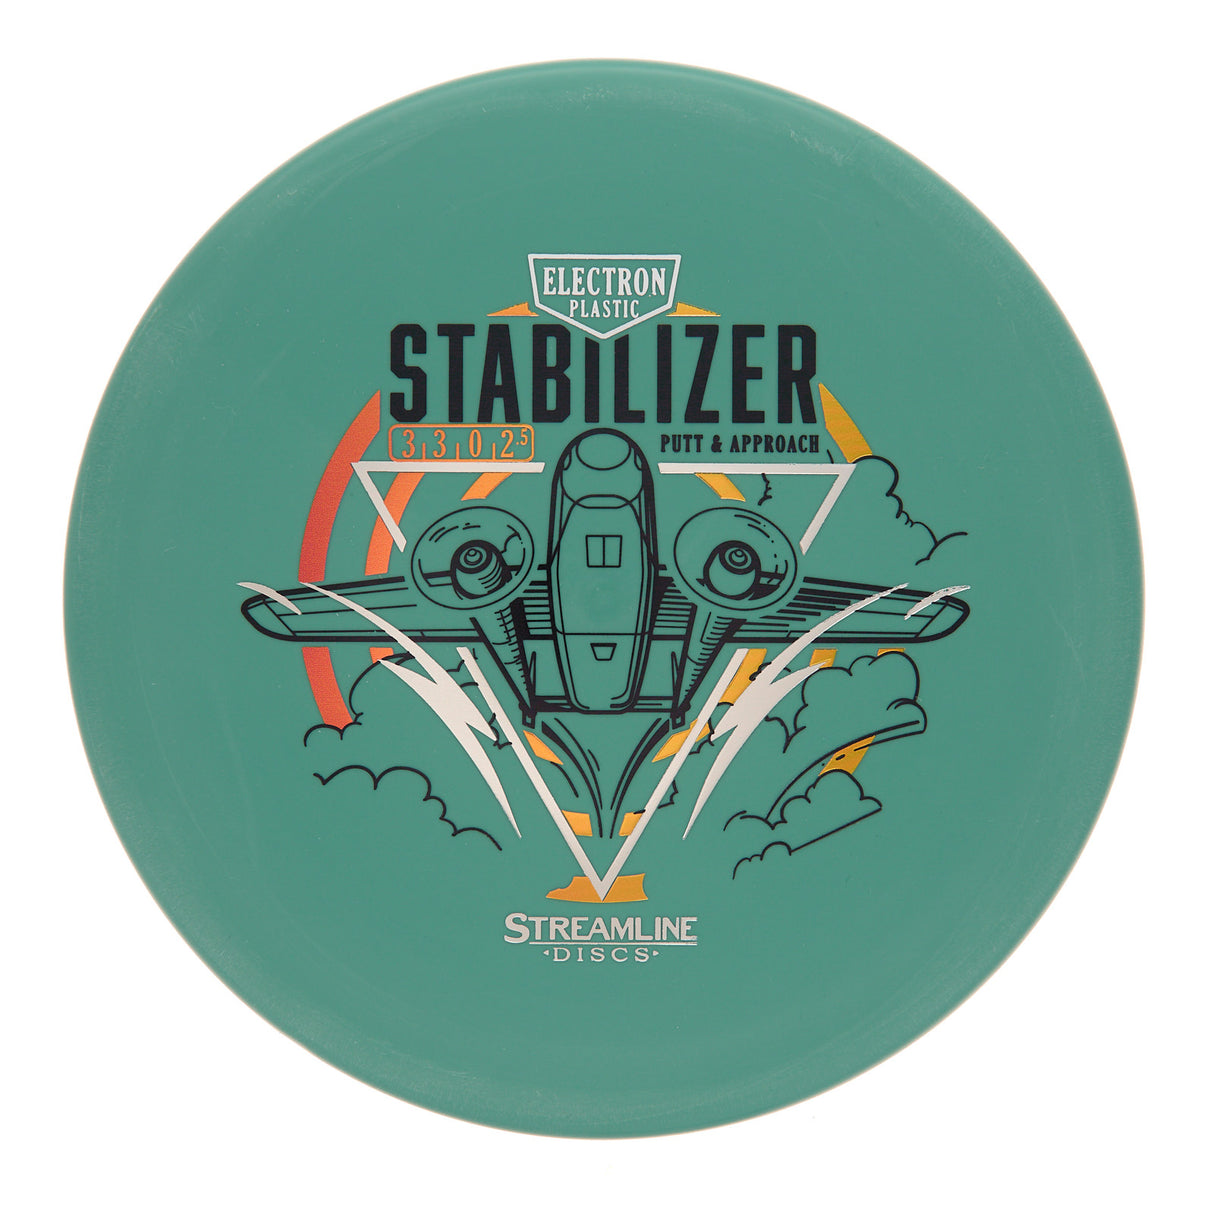 Streamline Stabilizer - Electron 167g | Style 0004